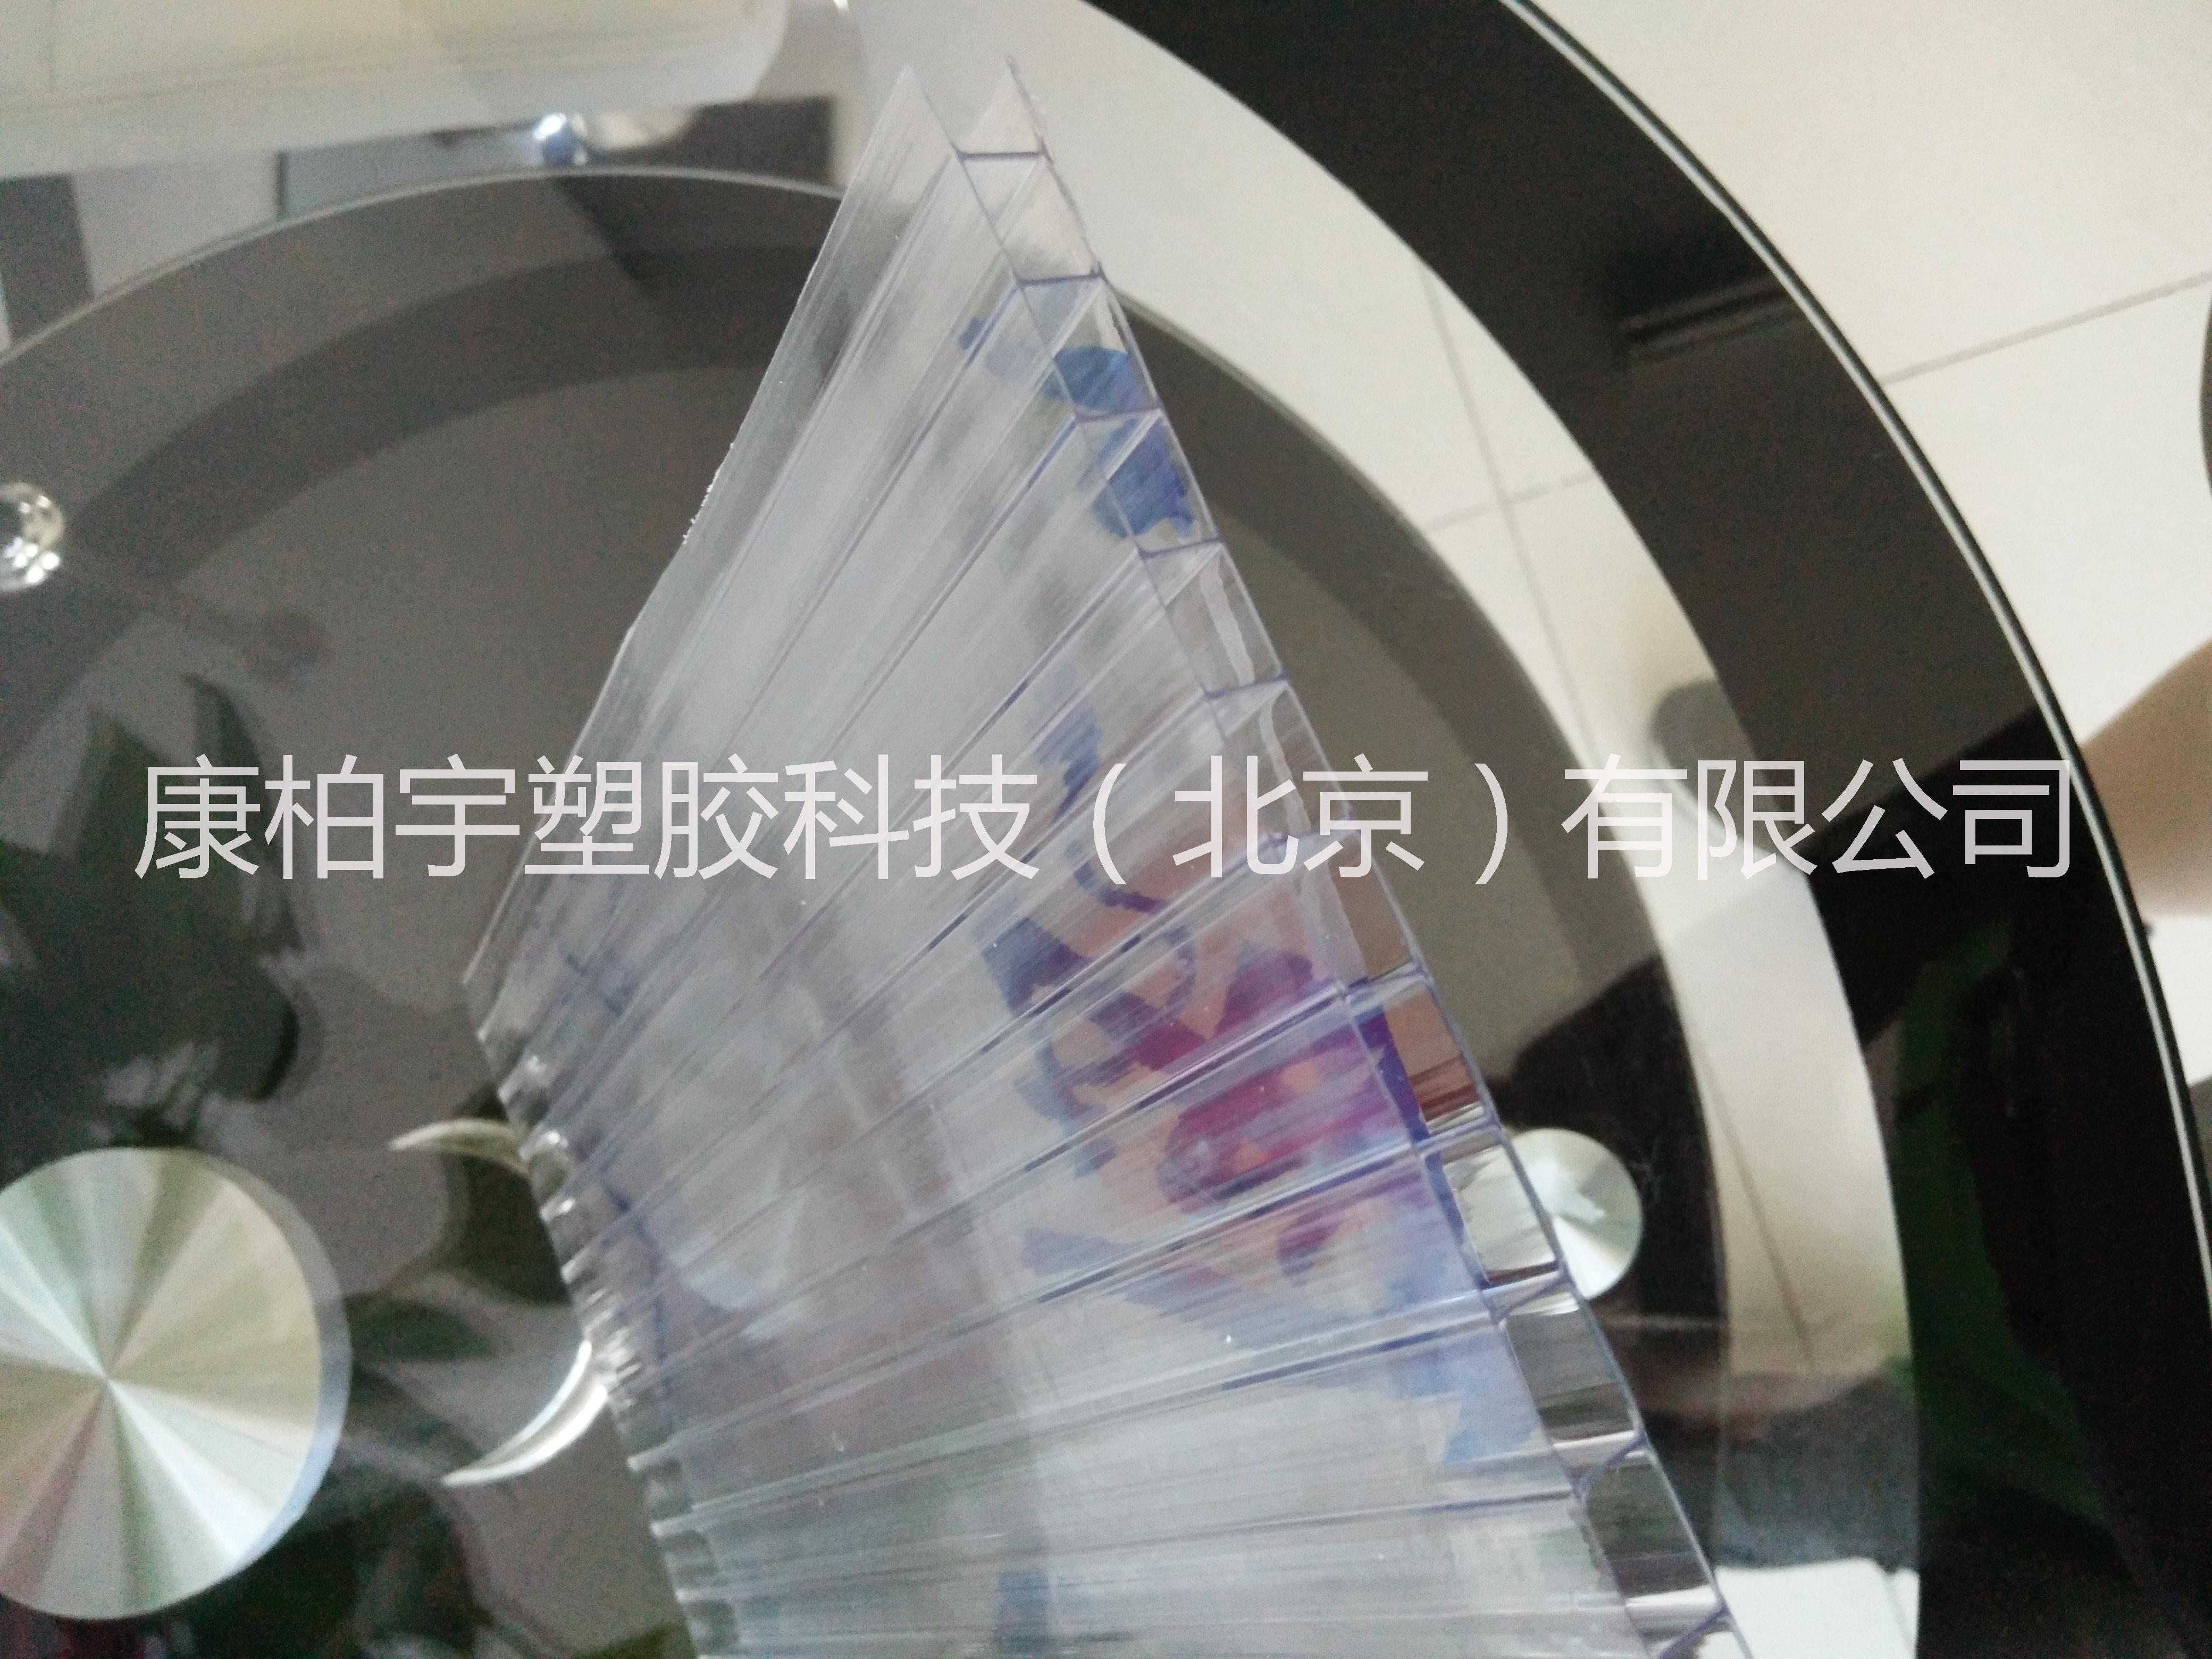 北京市生产聚碳酸酯PC阳光板厂家康柏宇阳光板厂生产、销售聚碳酸酯PC阳光板、采光板，遮阳板 生产聚碳酸酯PC阳光板